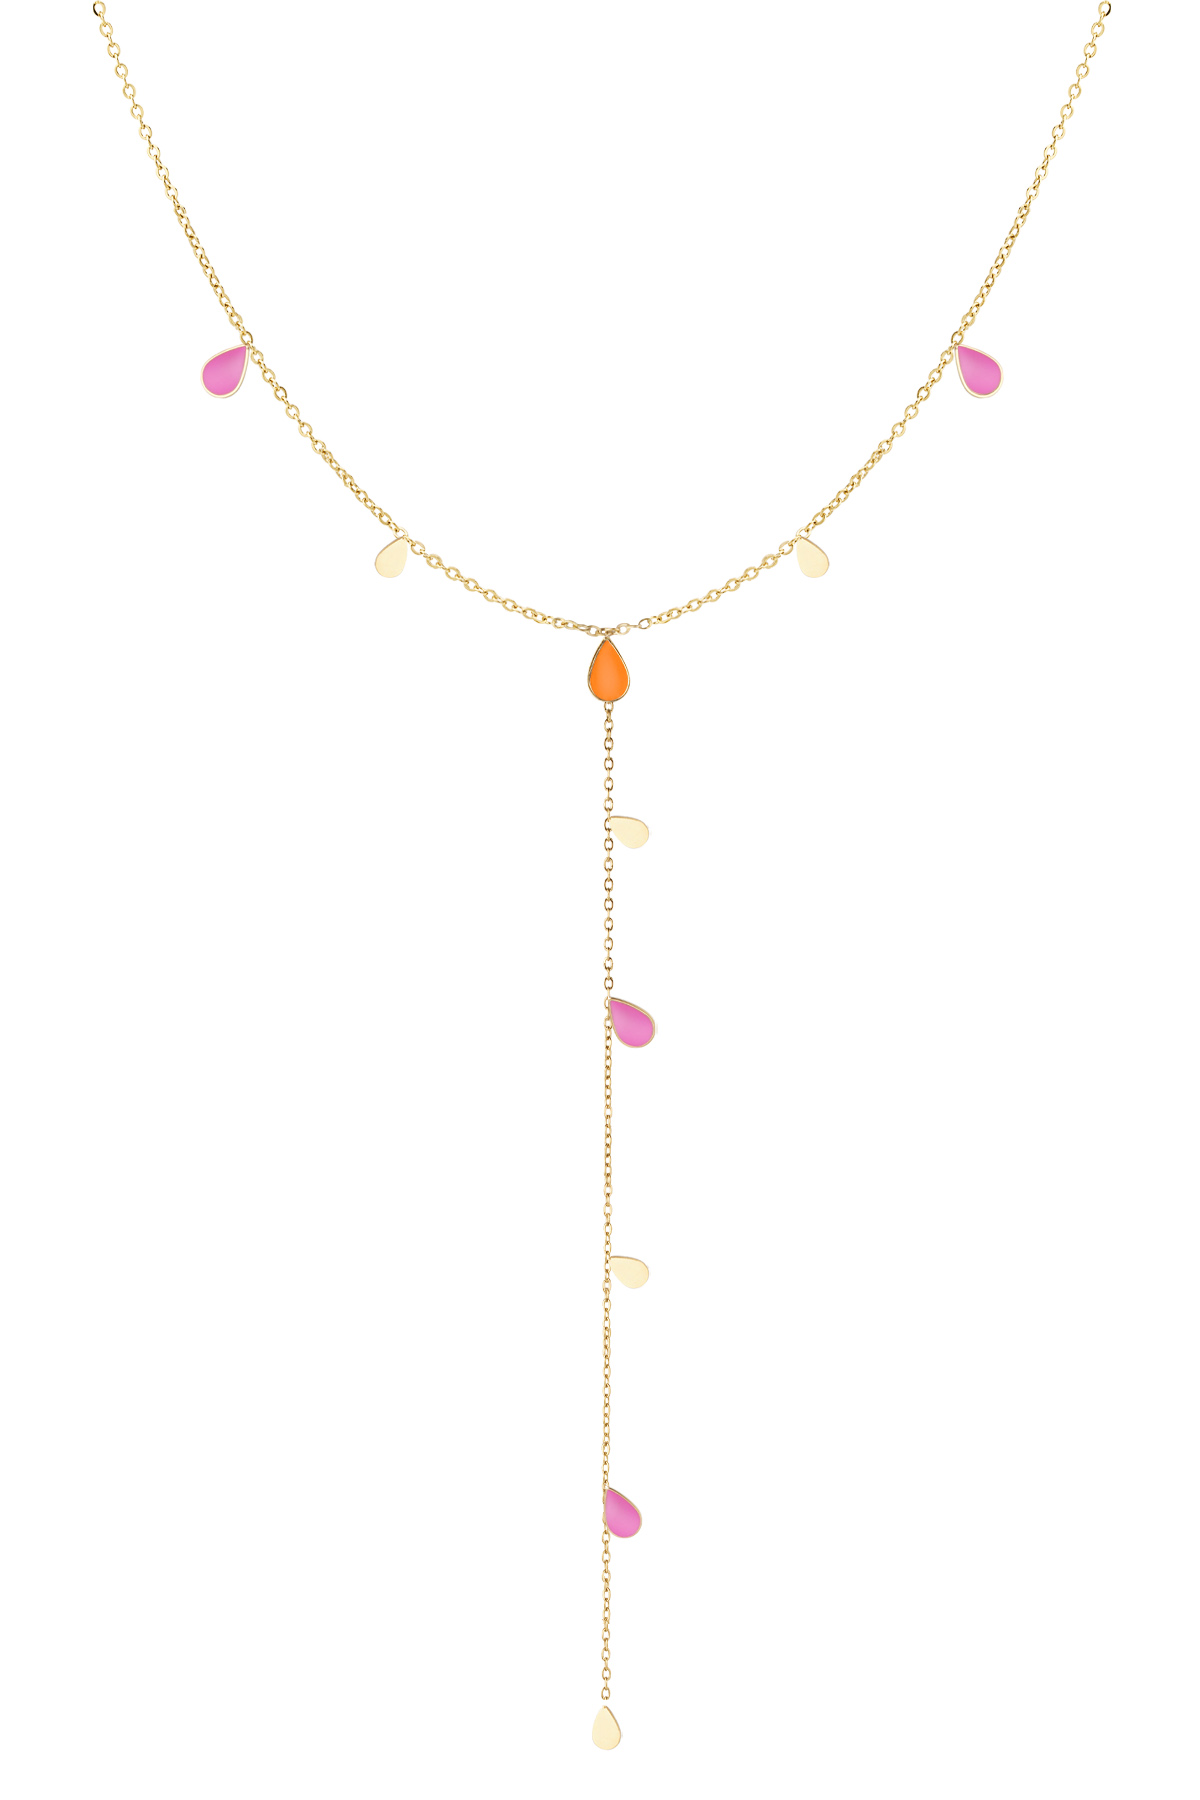 Lange Halskette mit Emaille-Tropfen – orange-rosa